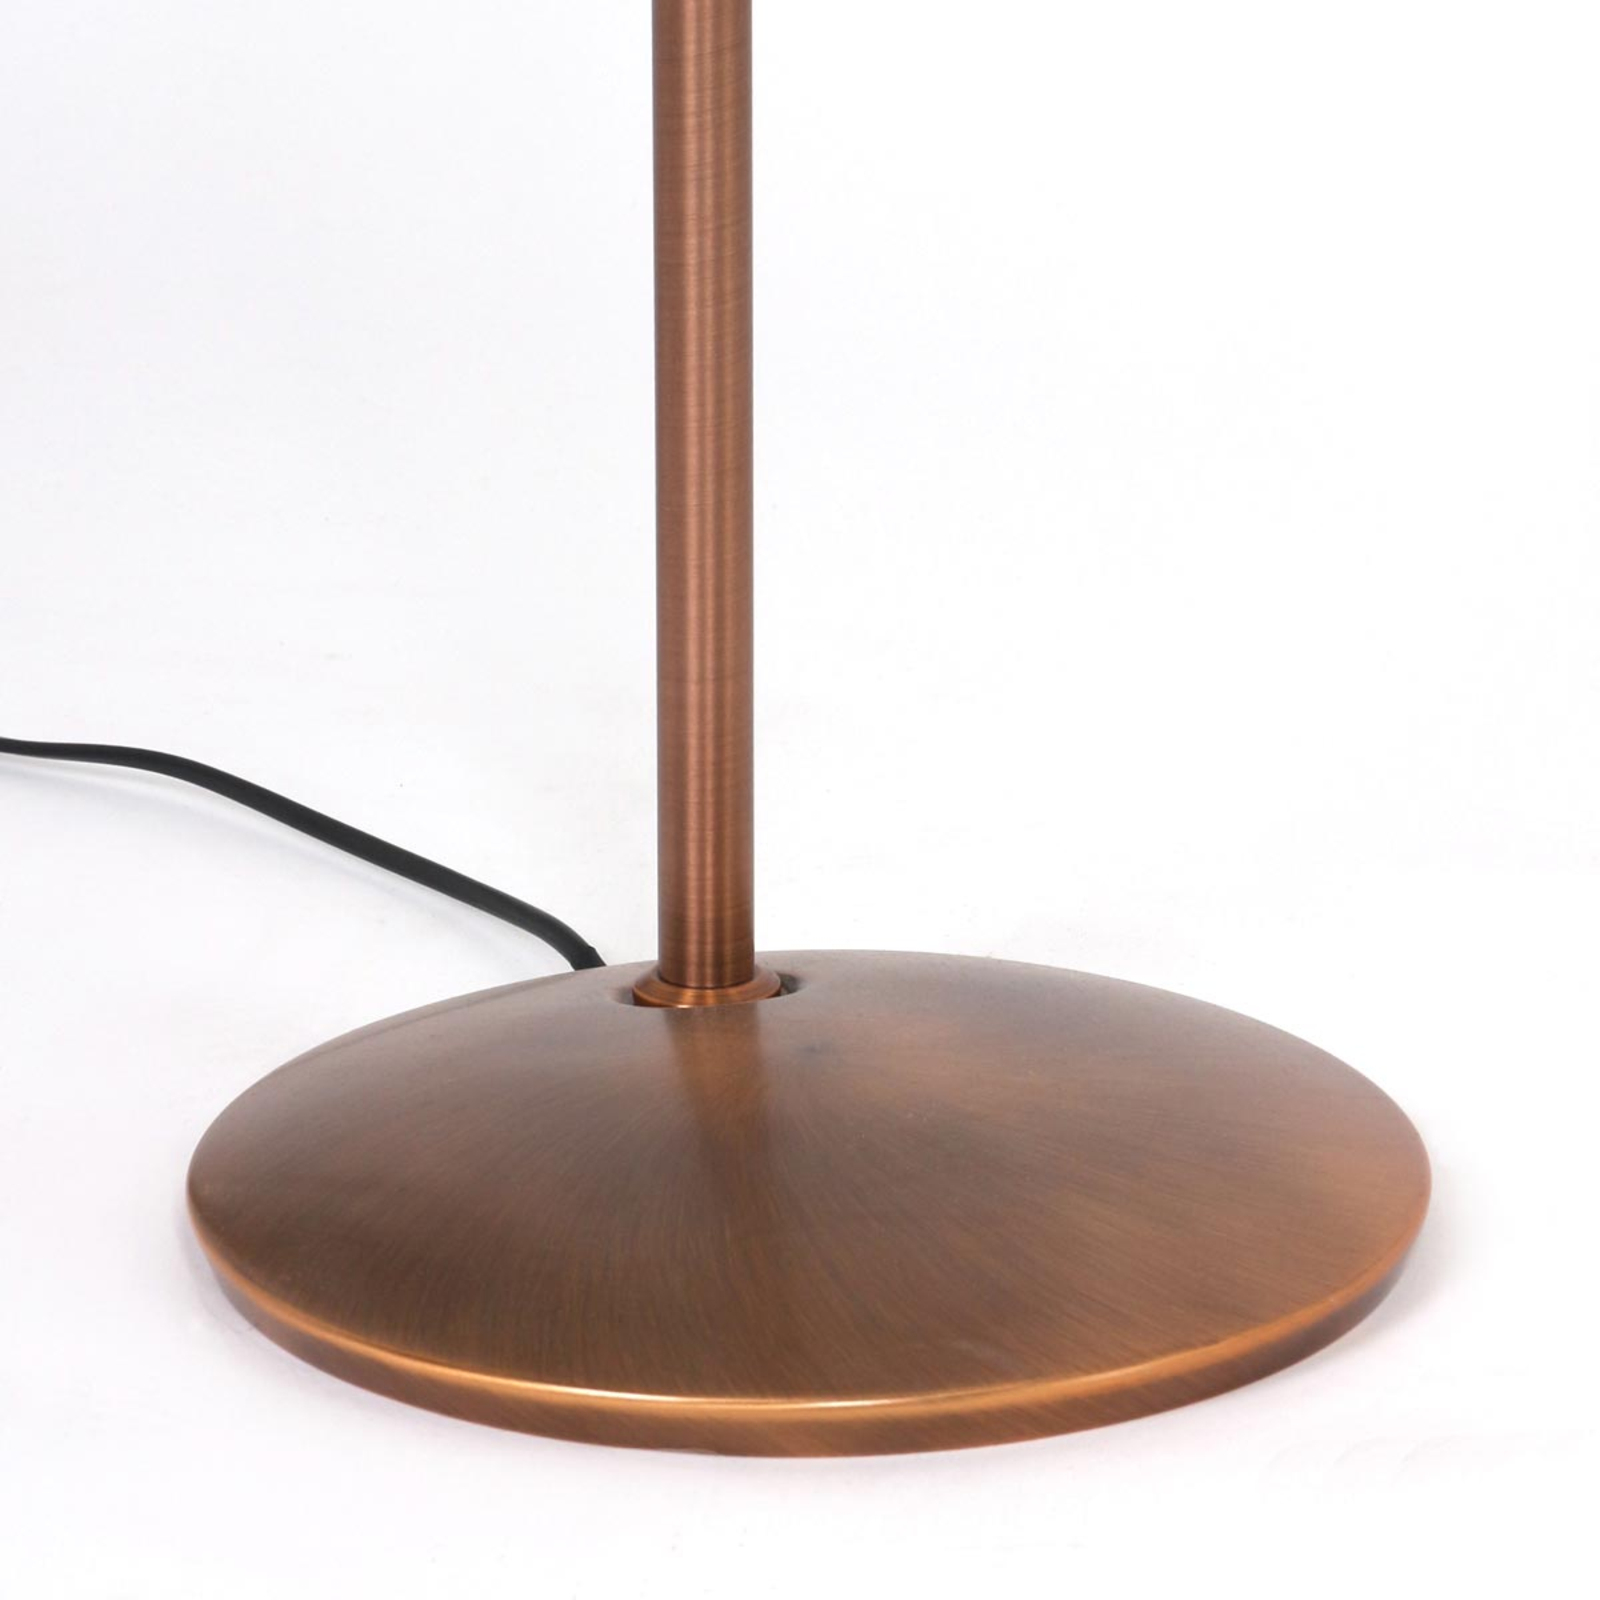 Dimm- und verstellbare LED-Stehlampe Zenith bronze